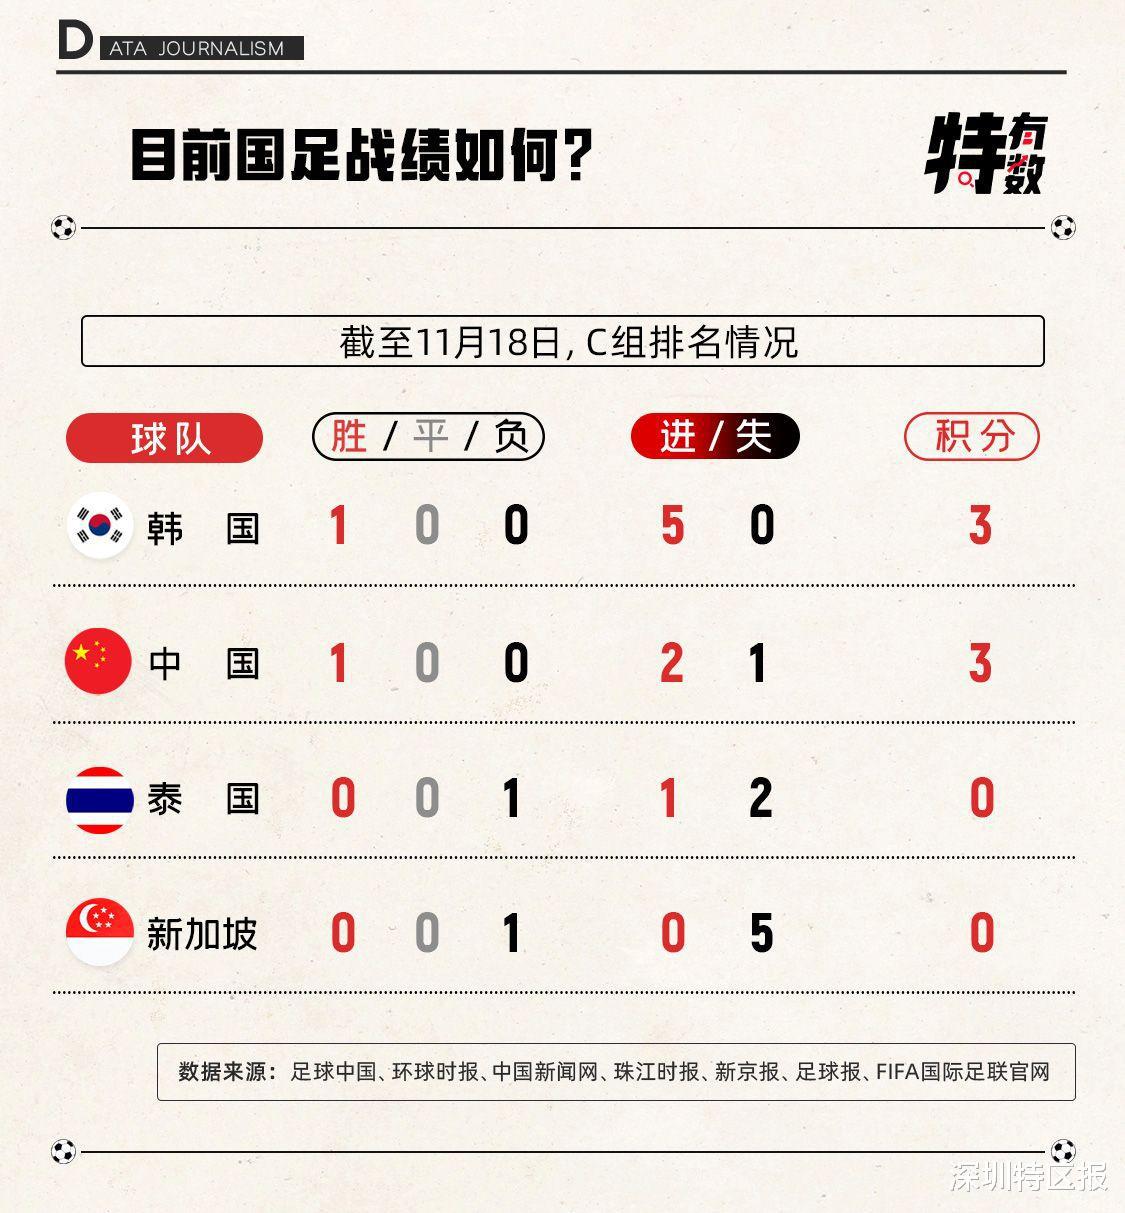 大战在即！数字透析世预赛中韩深圳对决 | 特有数(5)